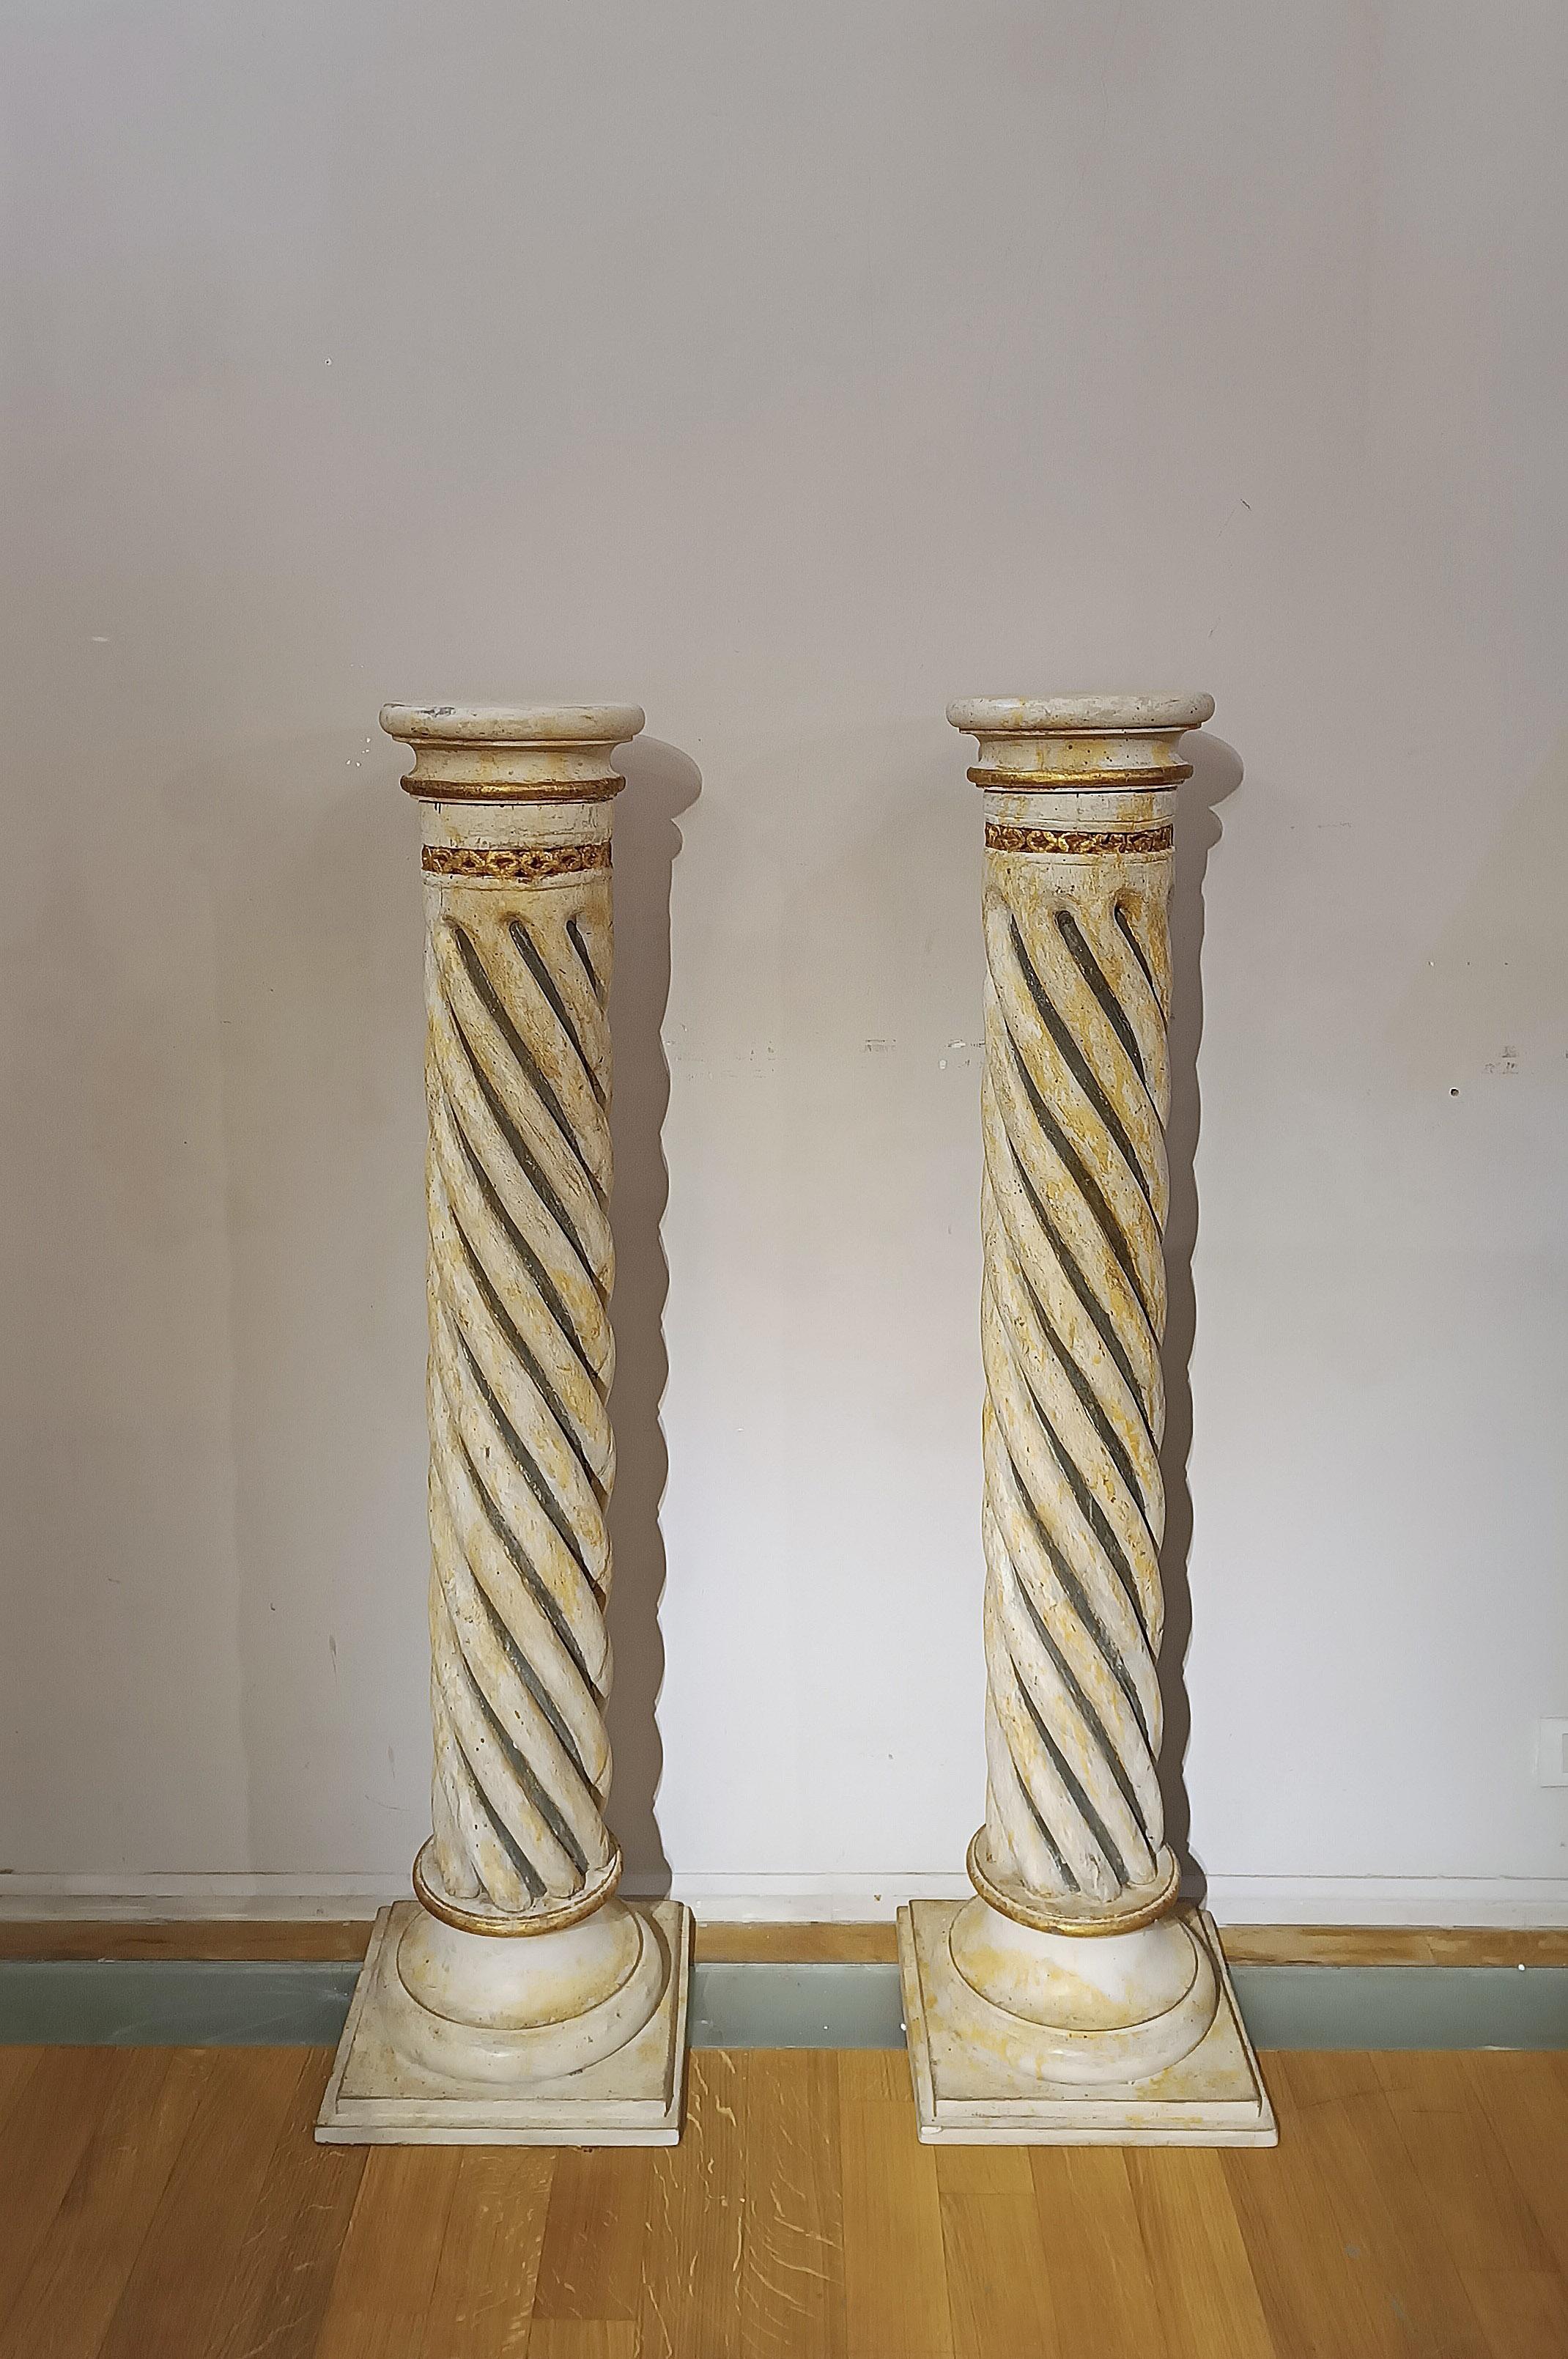 Paire de colonnes torsadées en bois, finement sculptées et peintes en duotone noir et jaune. Les colonnes sont enrichies de dorures à la feuille d'or pur, avec une attention particulière aux détails tels que le taureau final et la partie supérieure